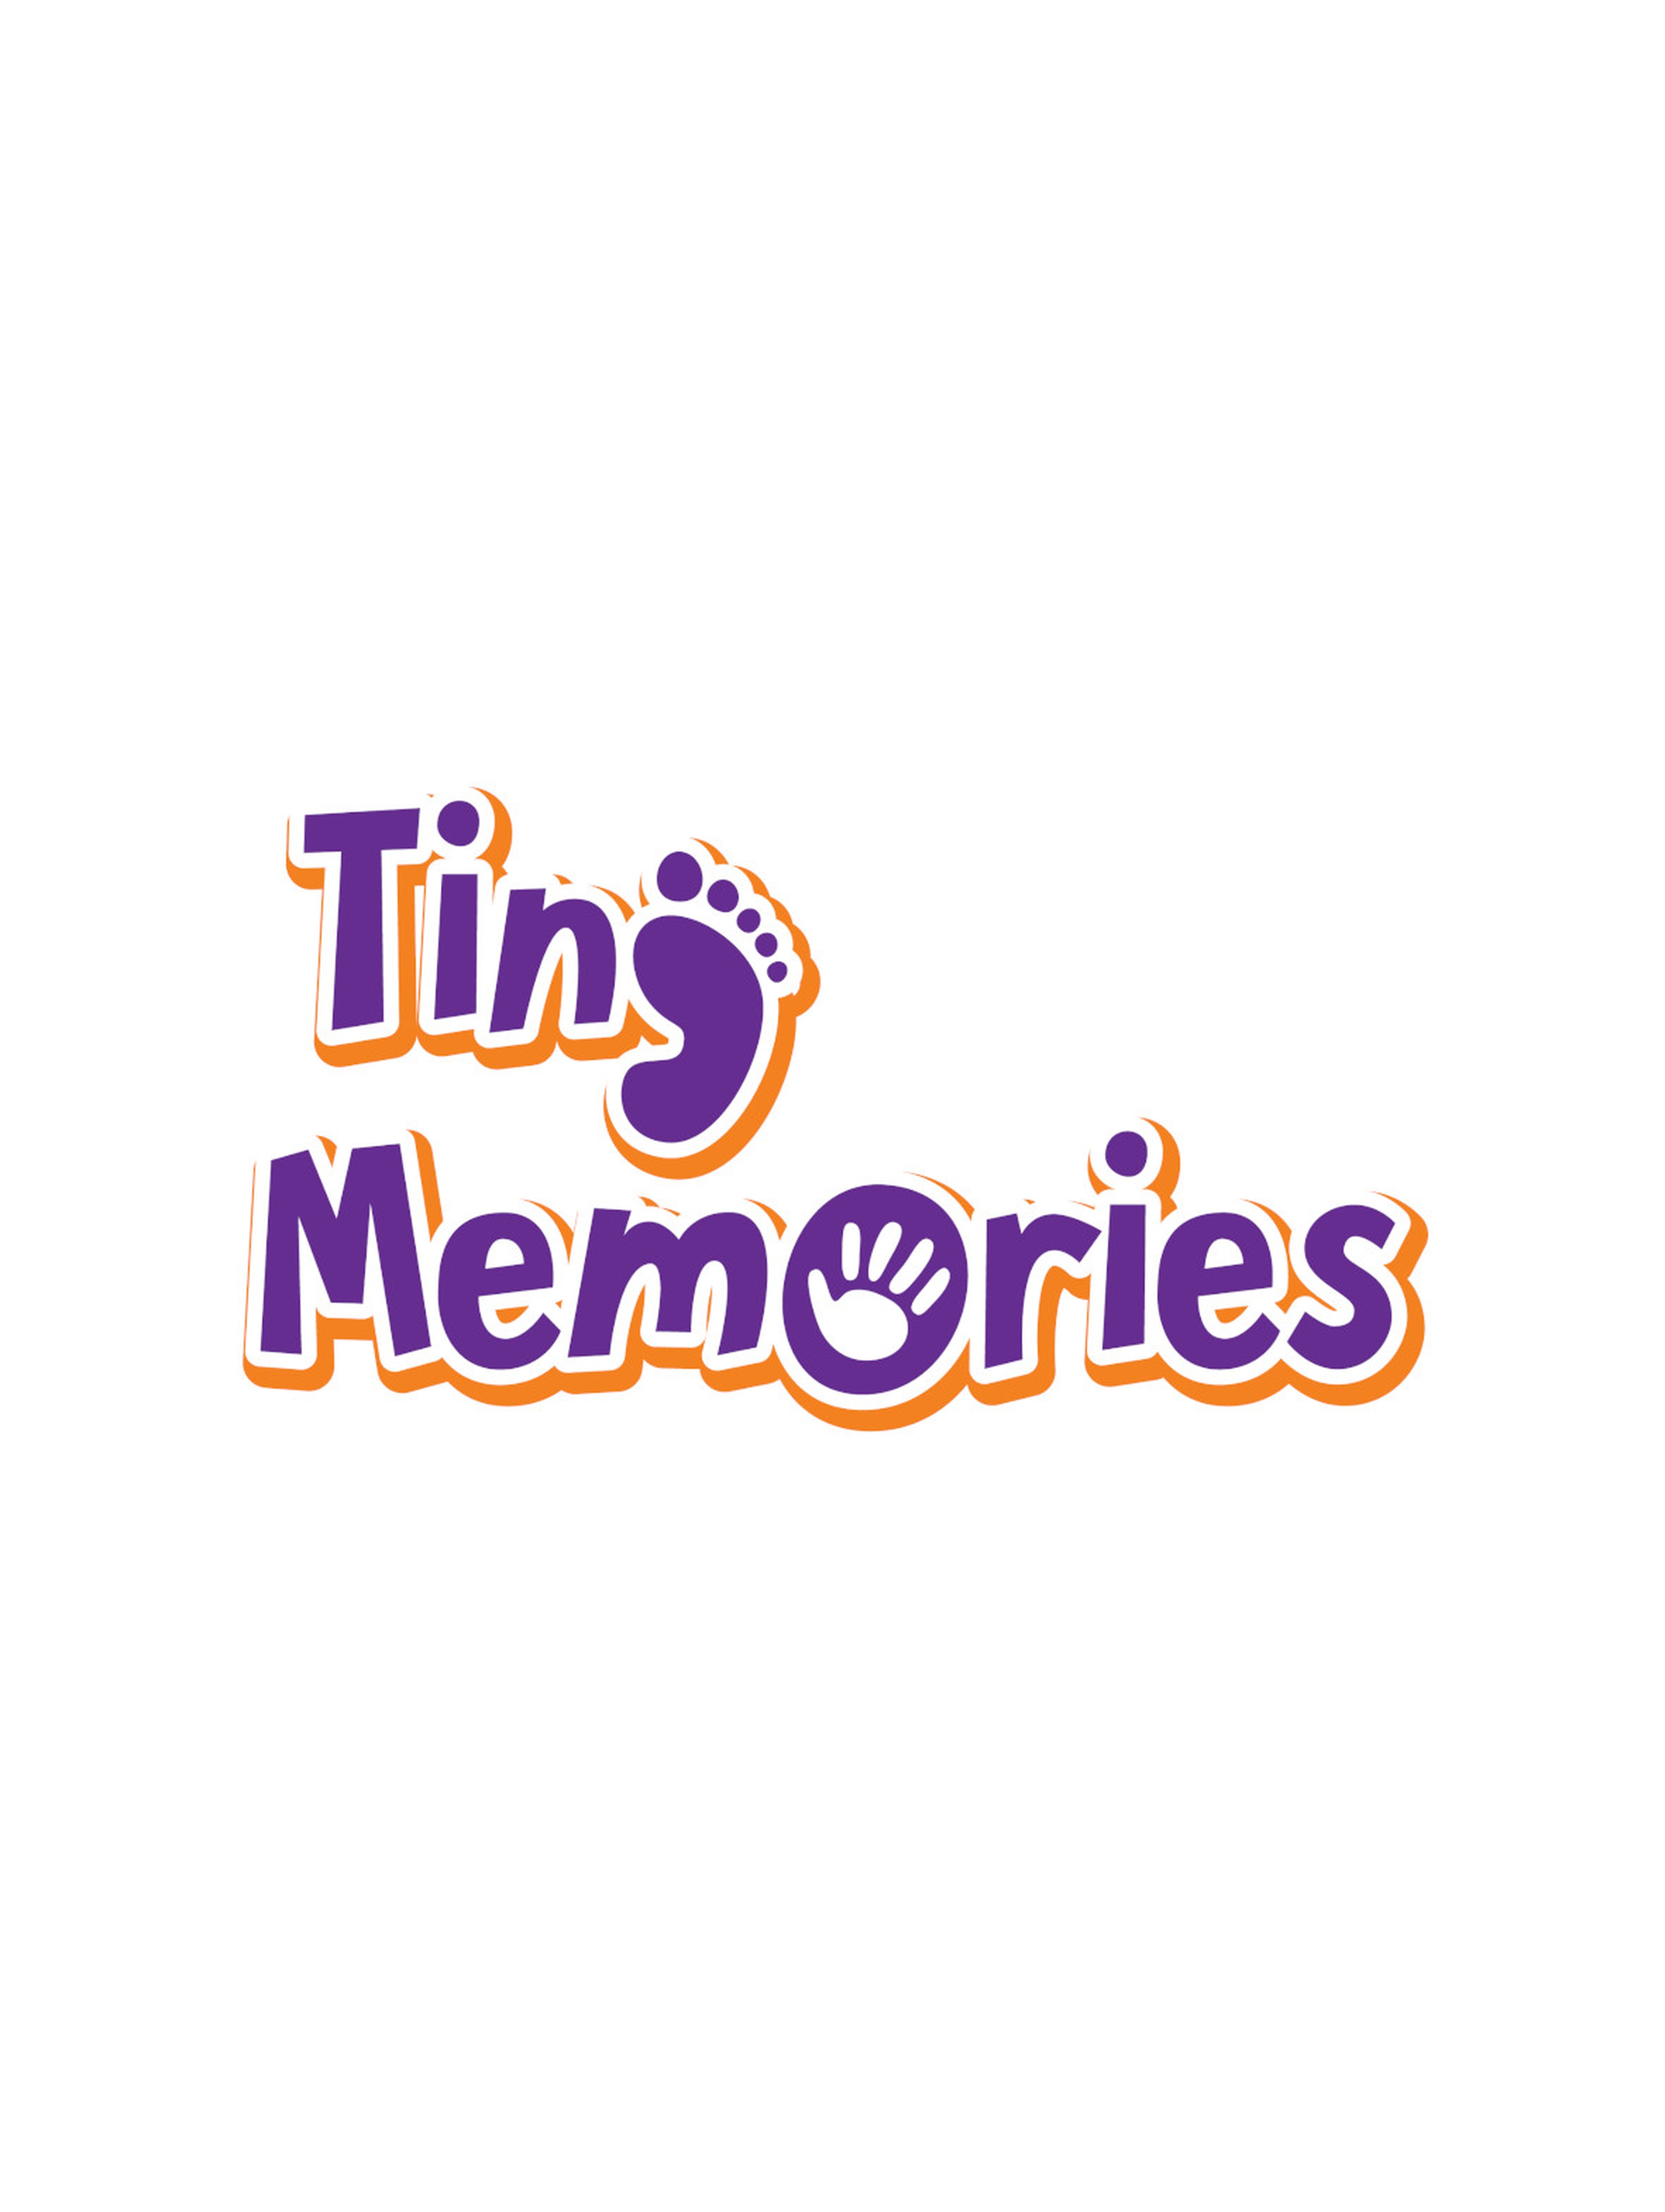 Tiny Memories Magic Ink - niebrudzący atrament, odcisk